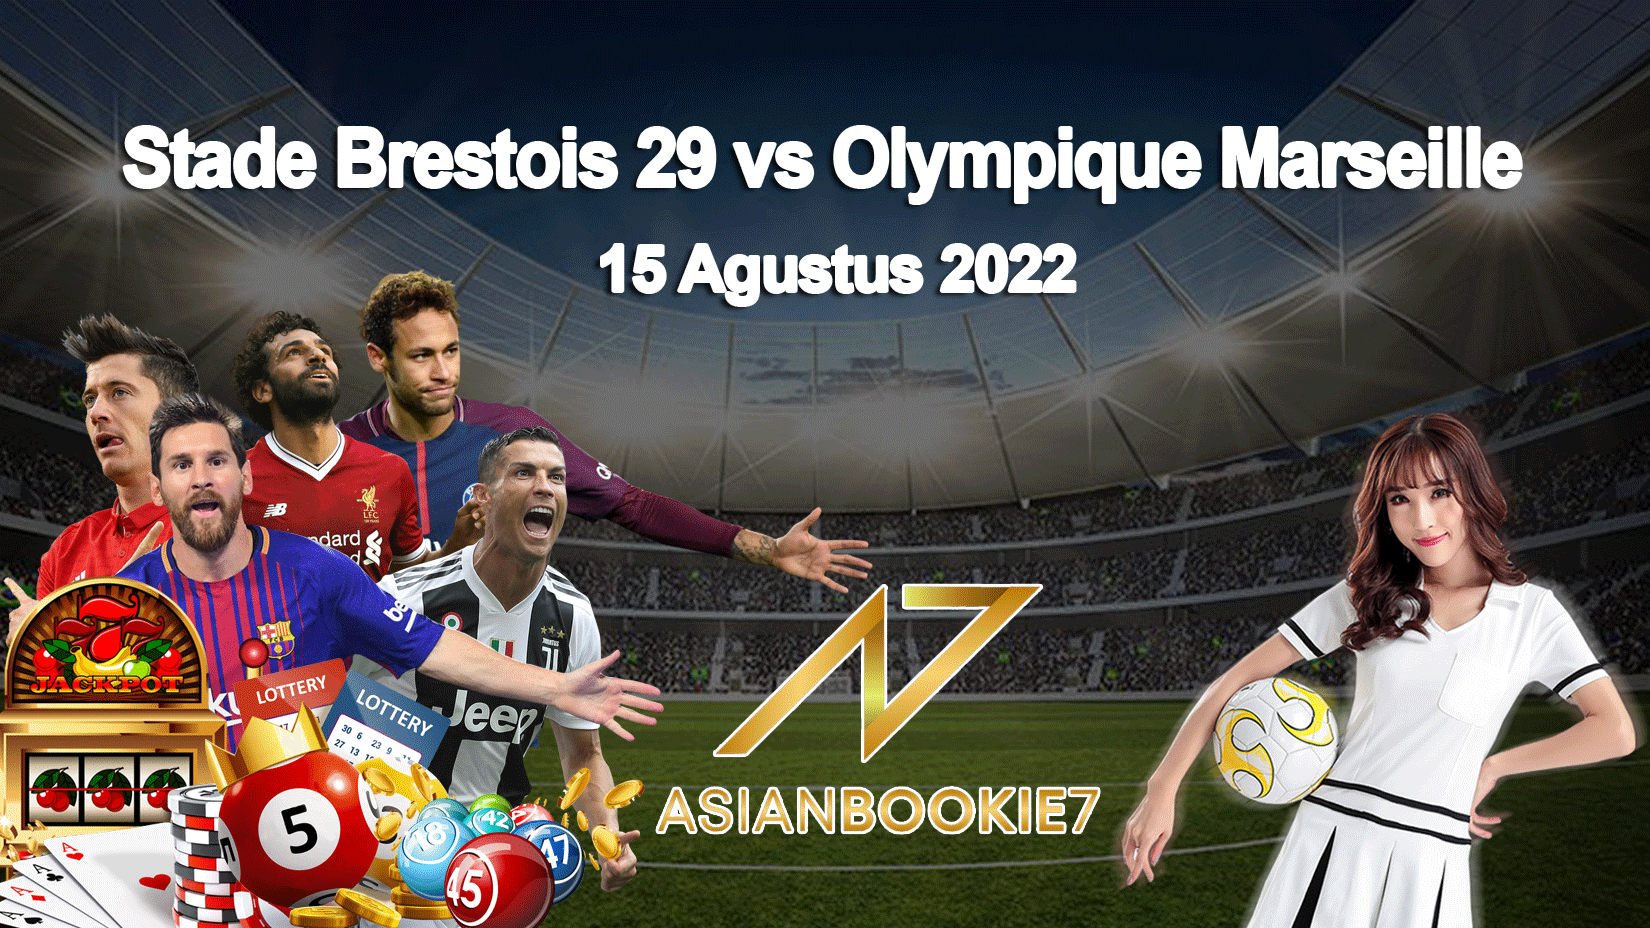 Prediksi Stade Brestois 29 vs Olympique Marseille 15 Agustus 2022